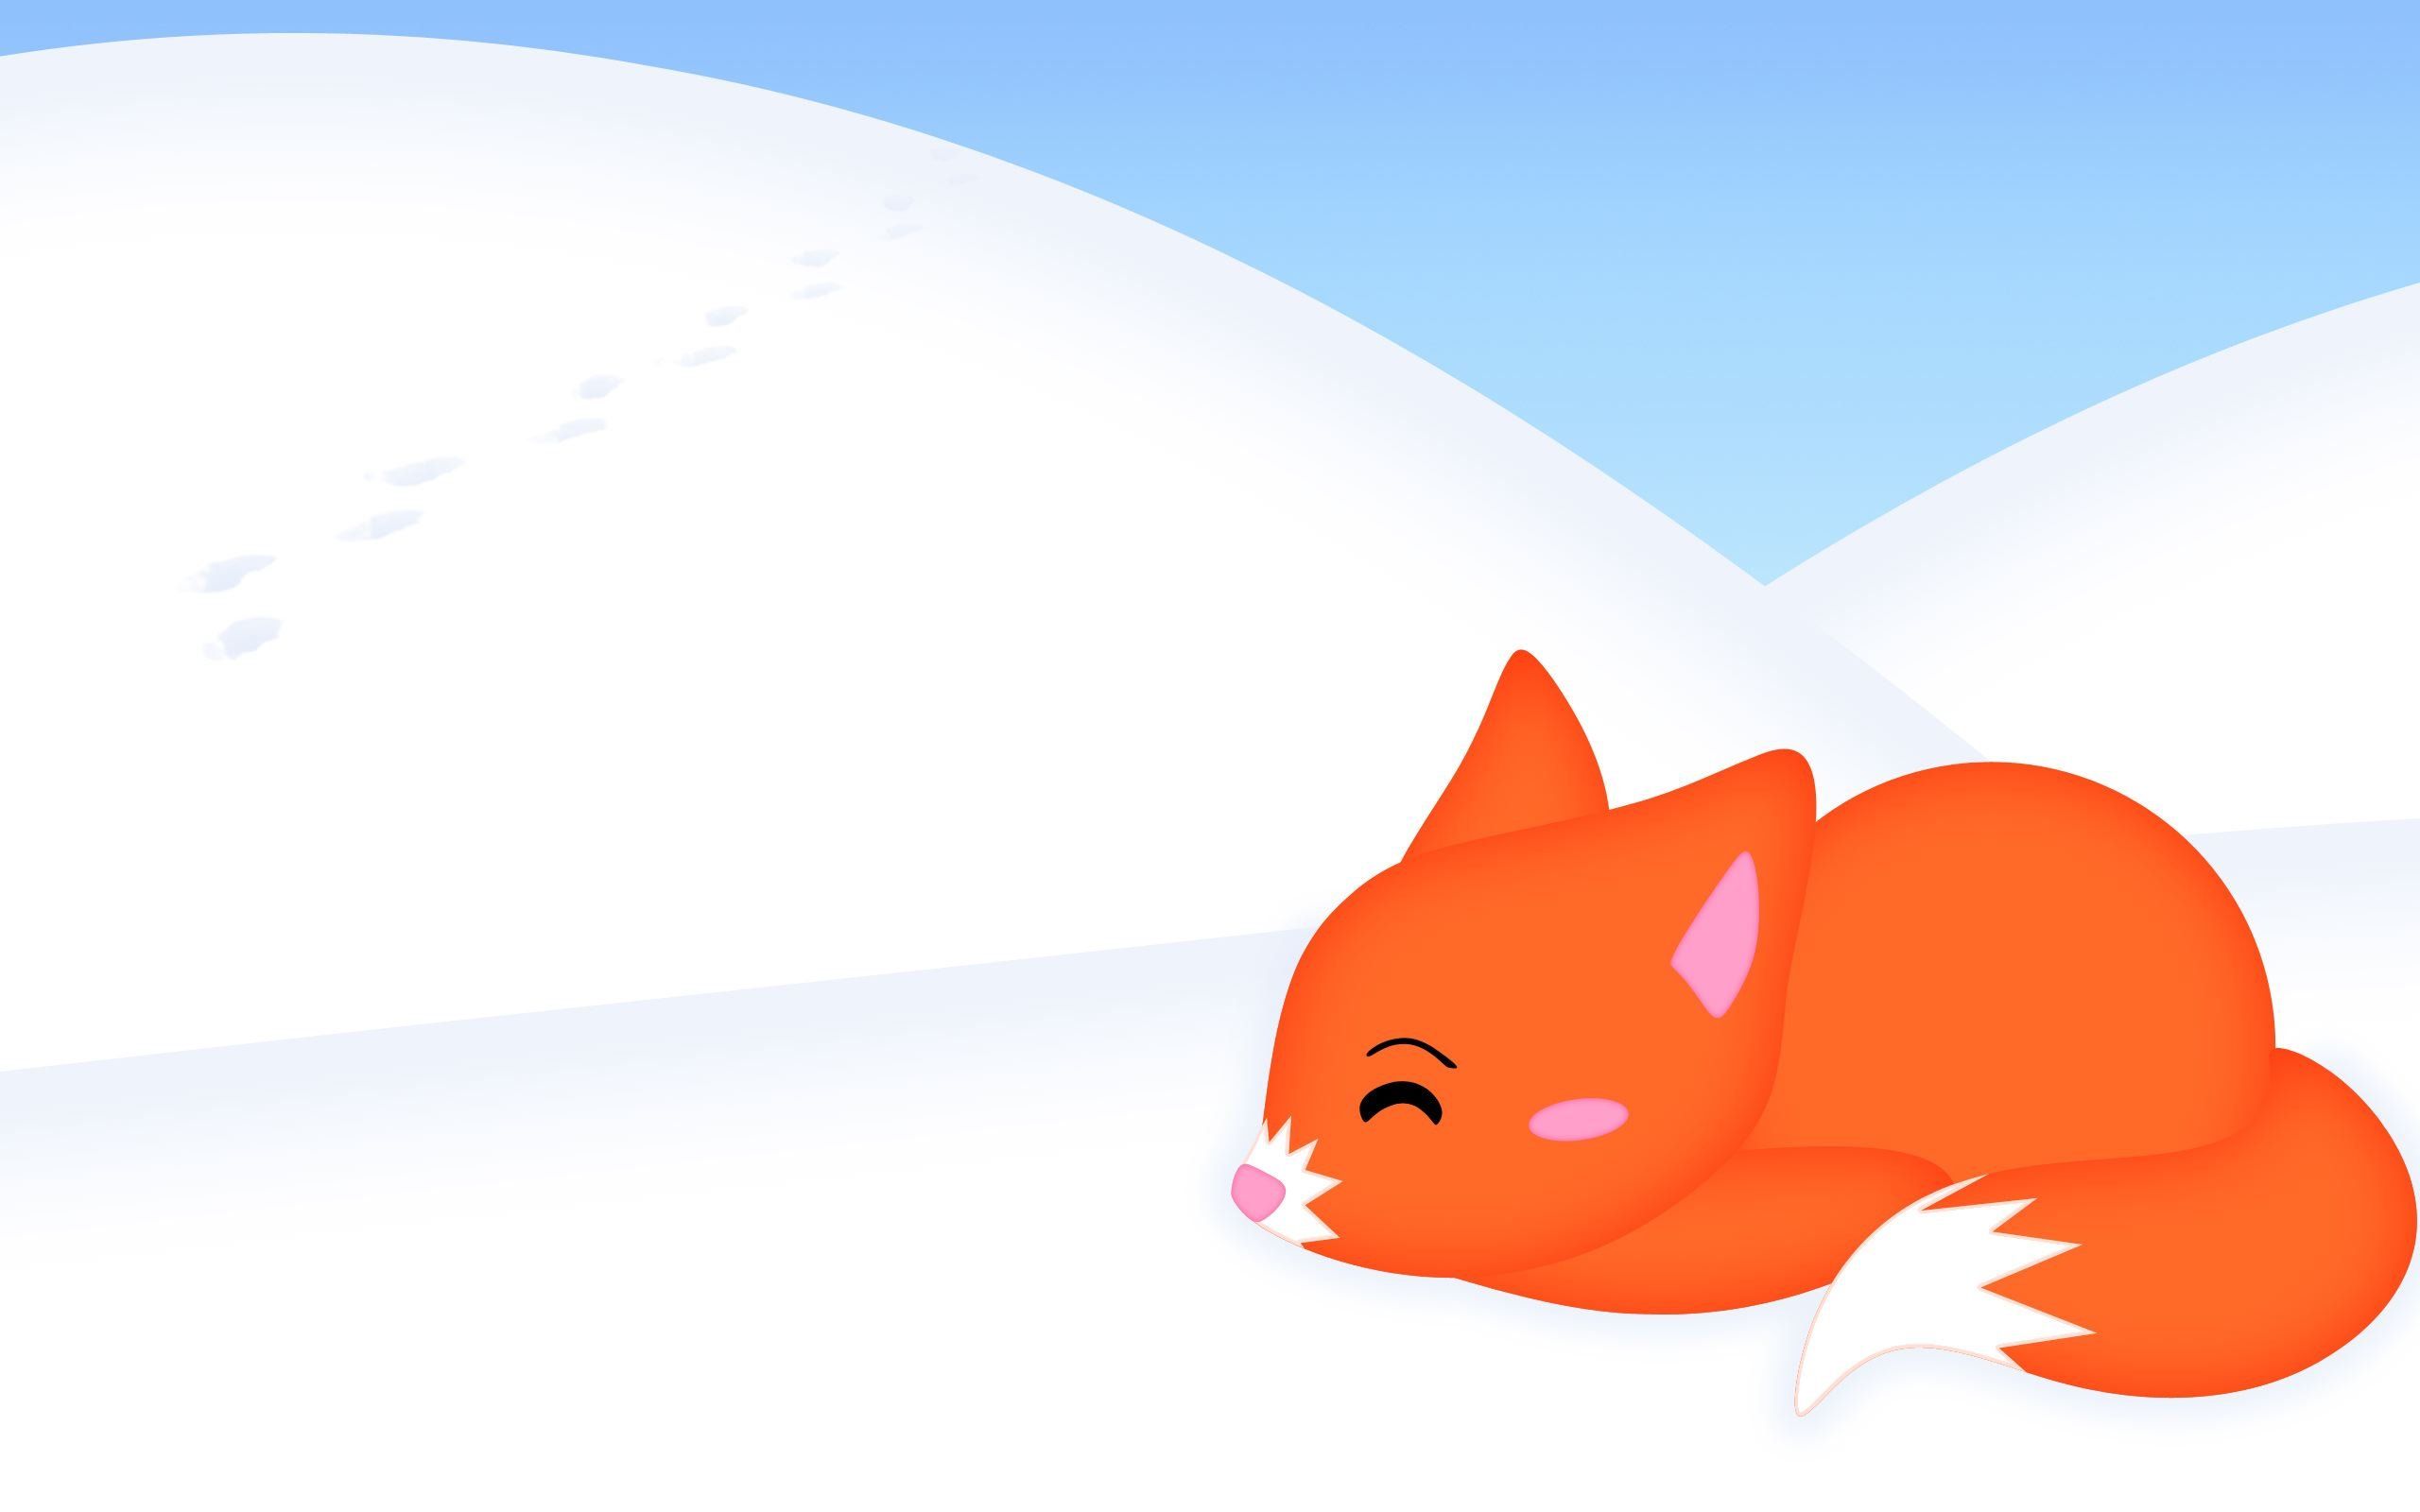 Snow Fox